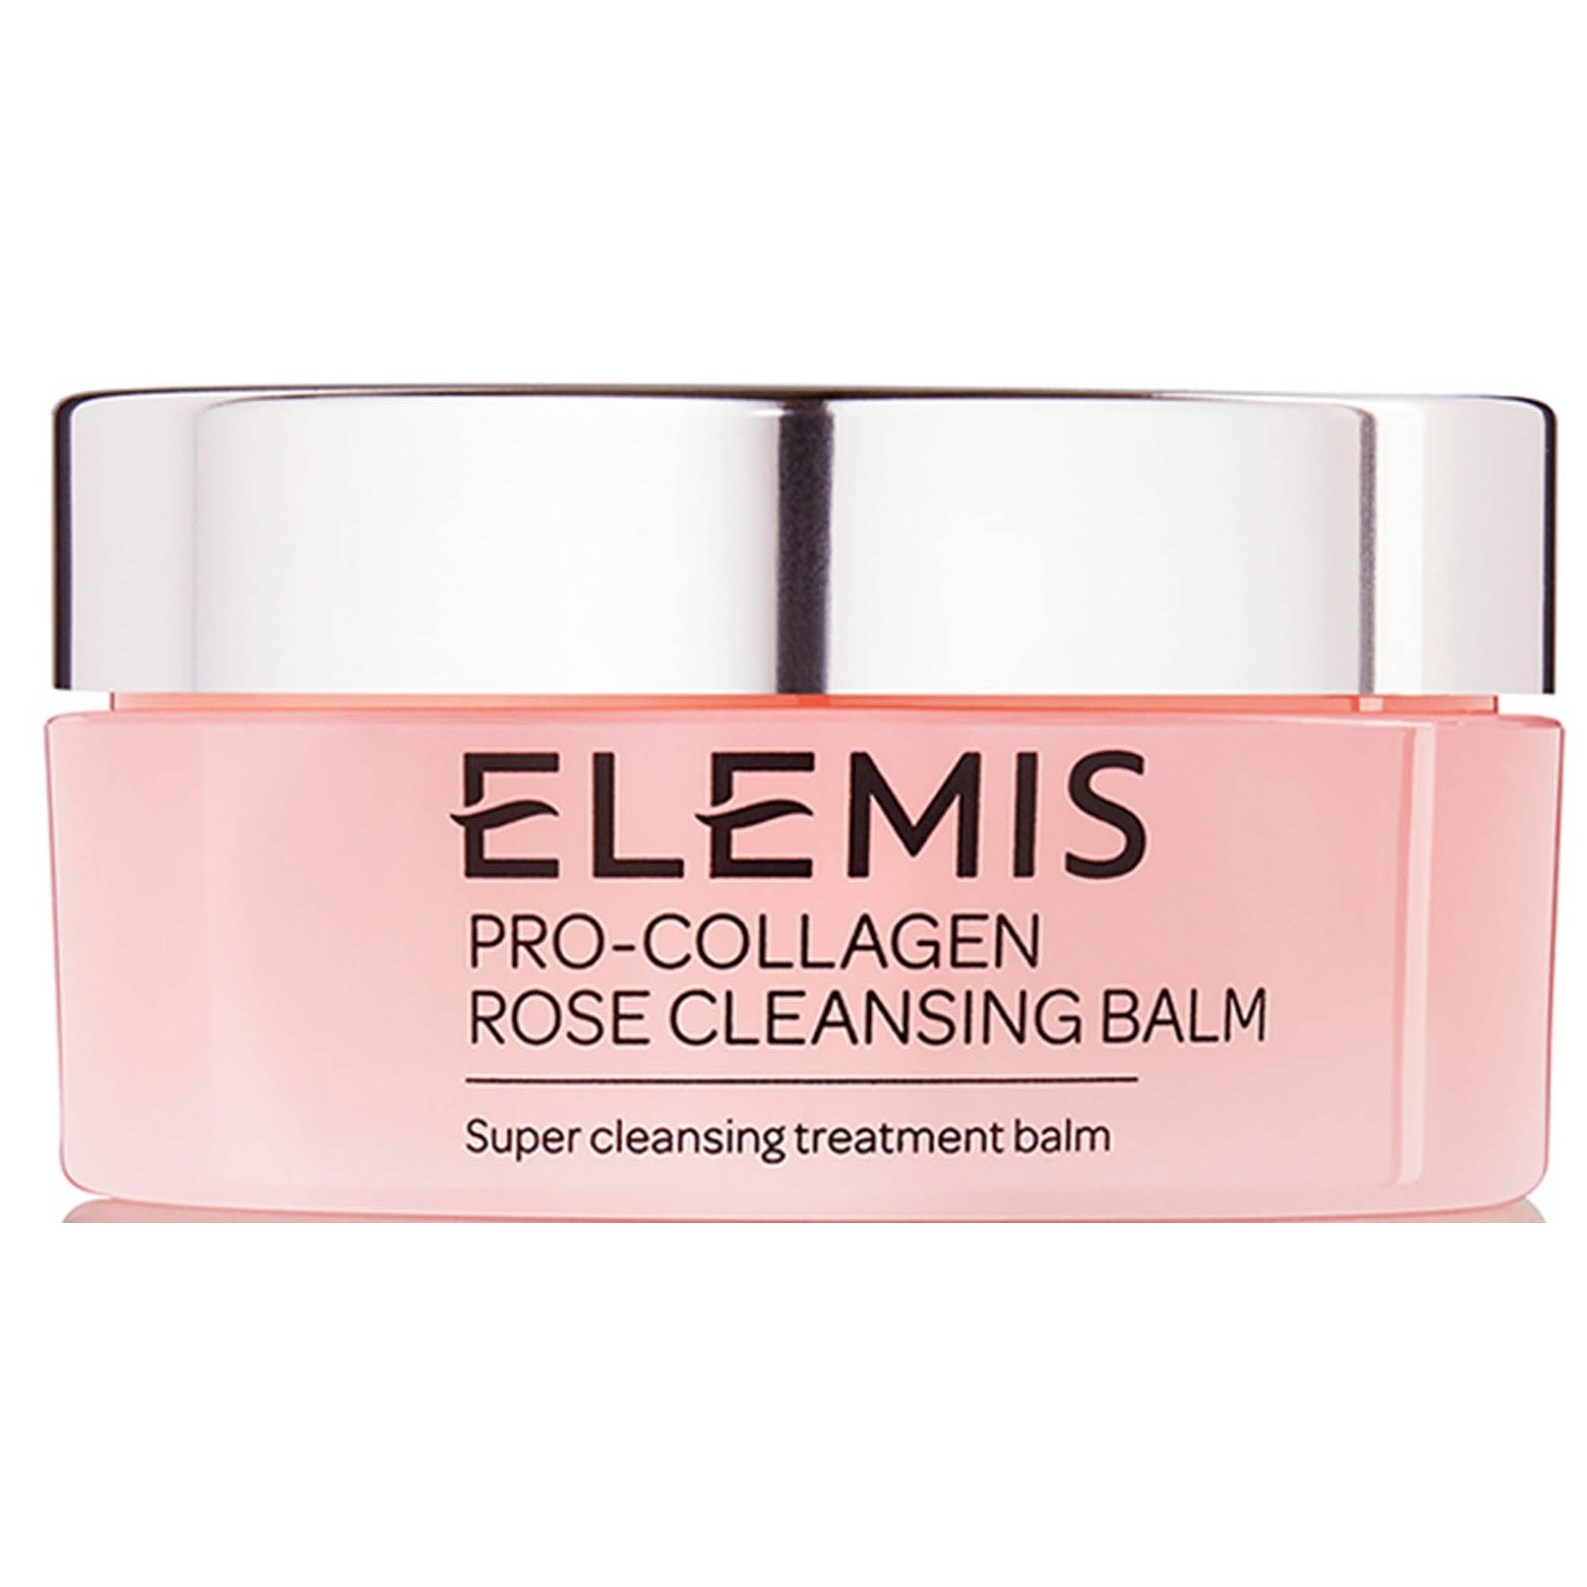 Bilde av Elemis Pro-collagen Rose Cleansing Balm